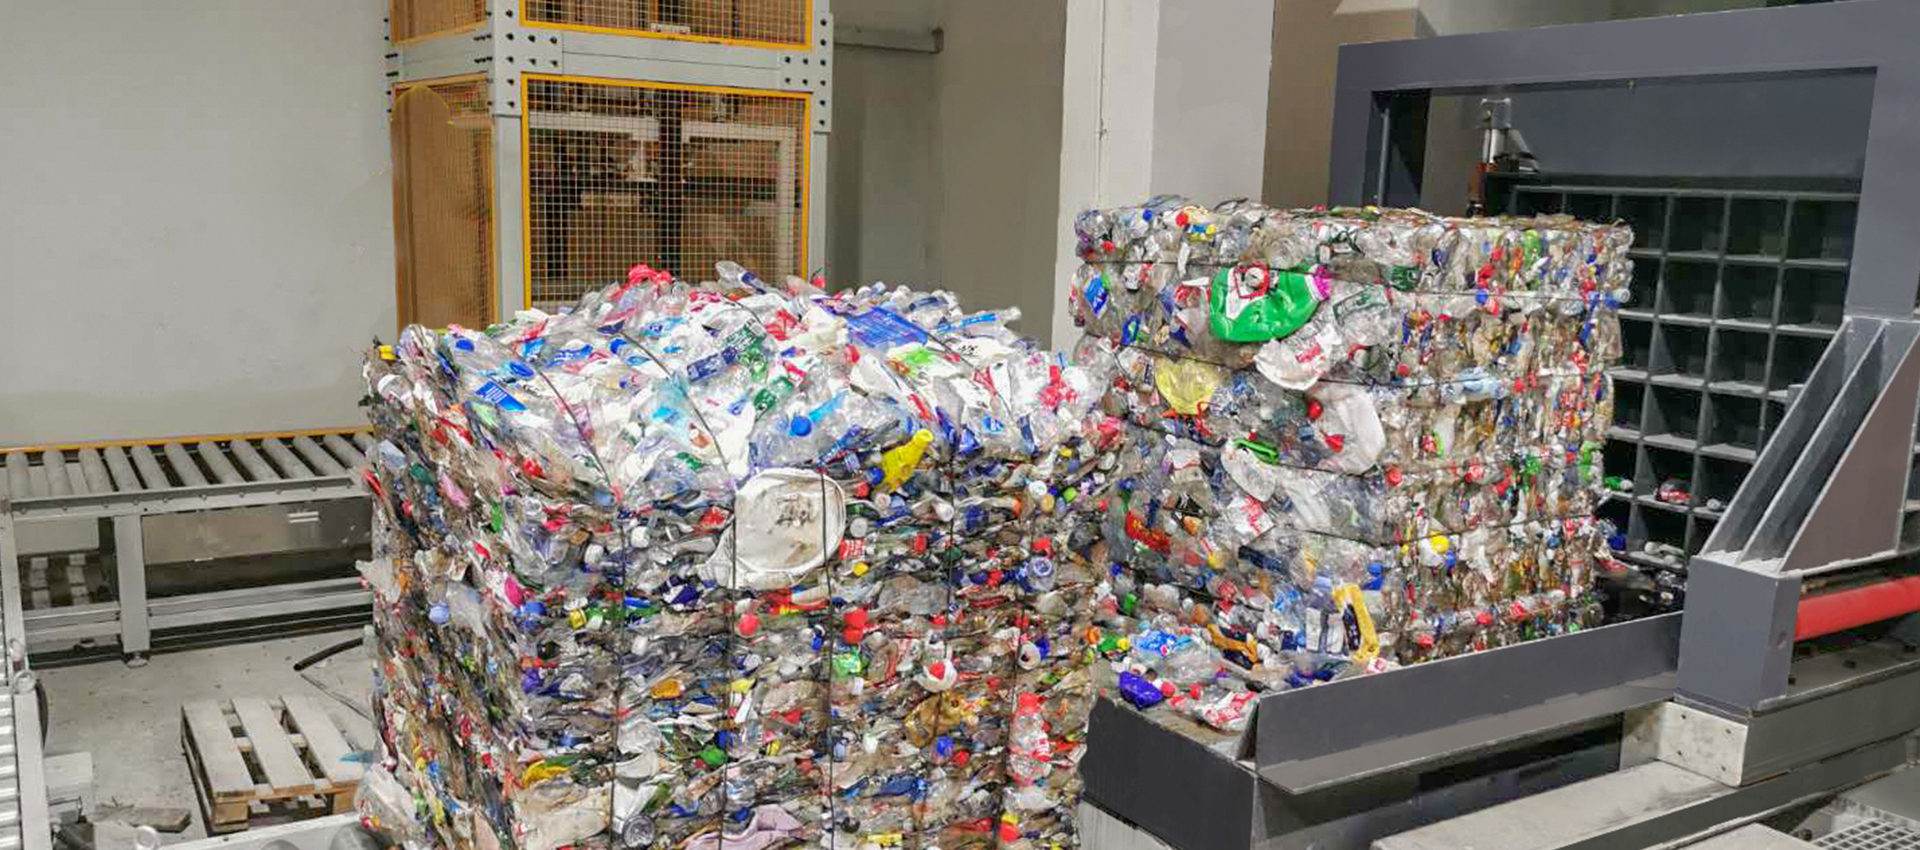 生活垃圾可回收物分揀打包生產線